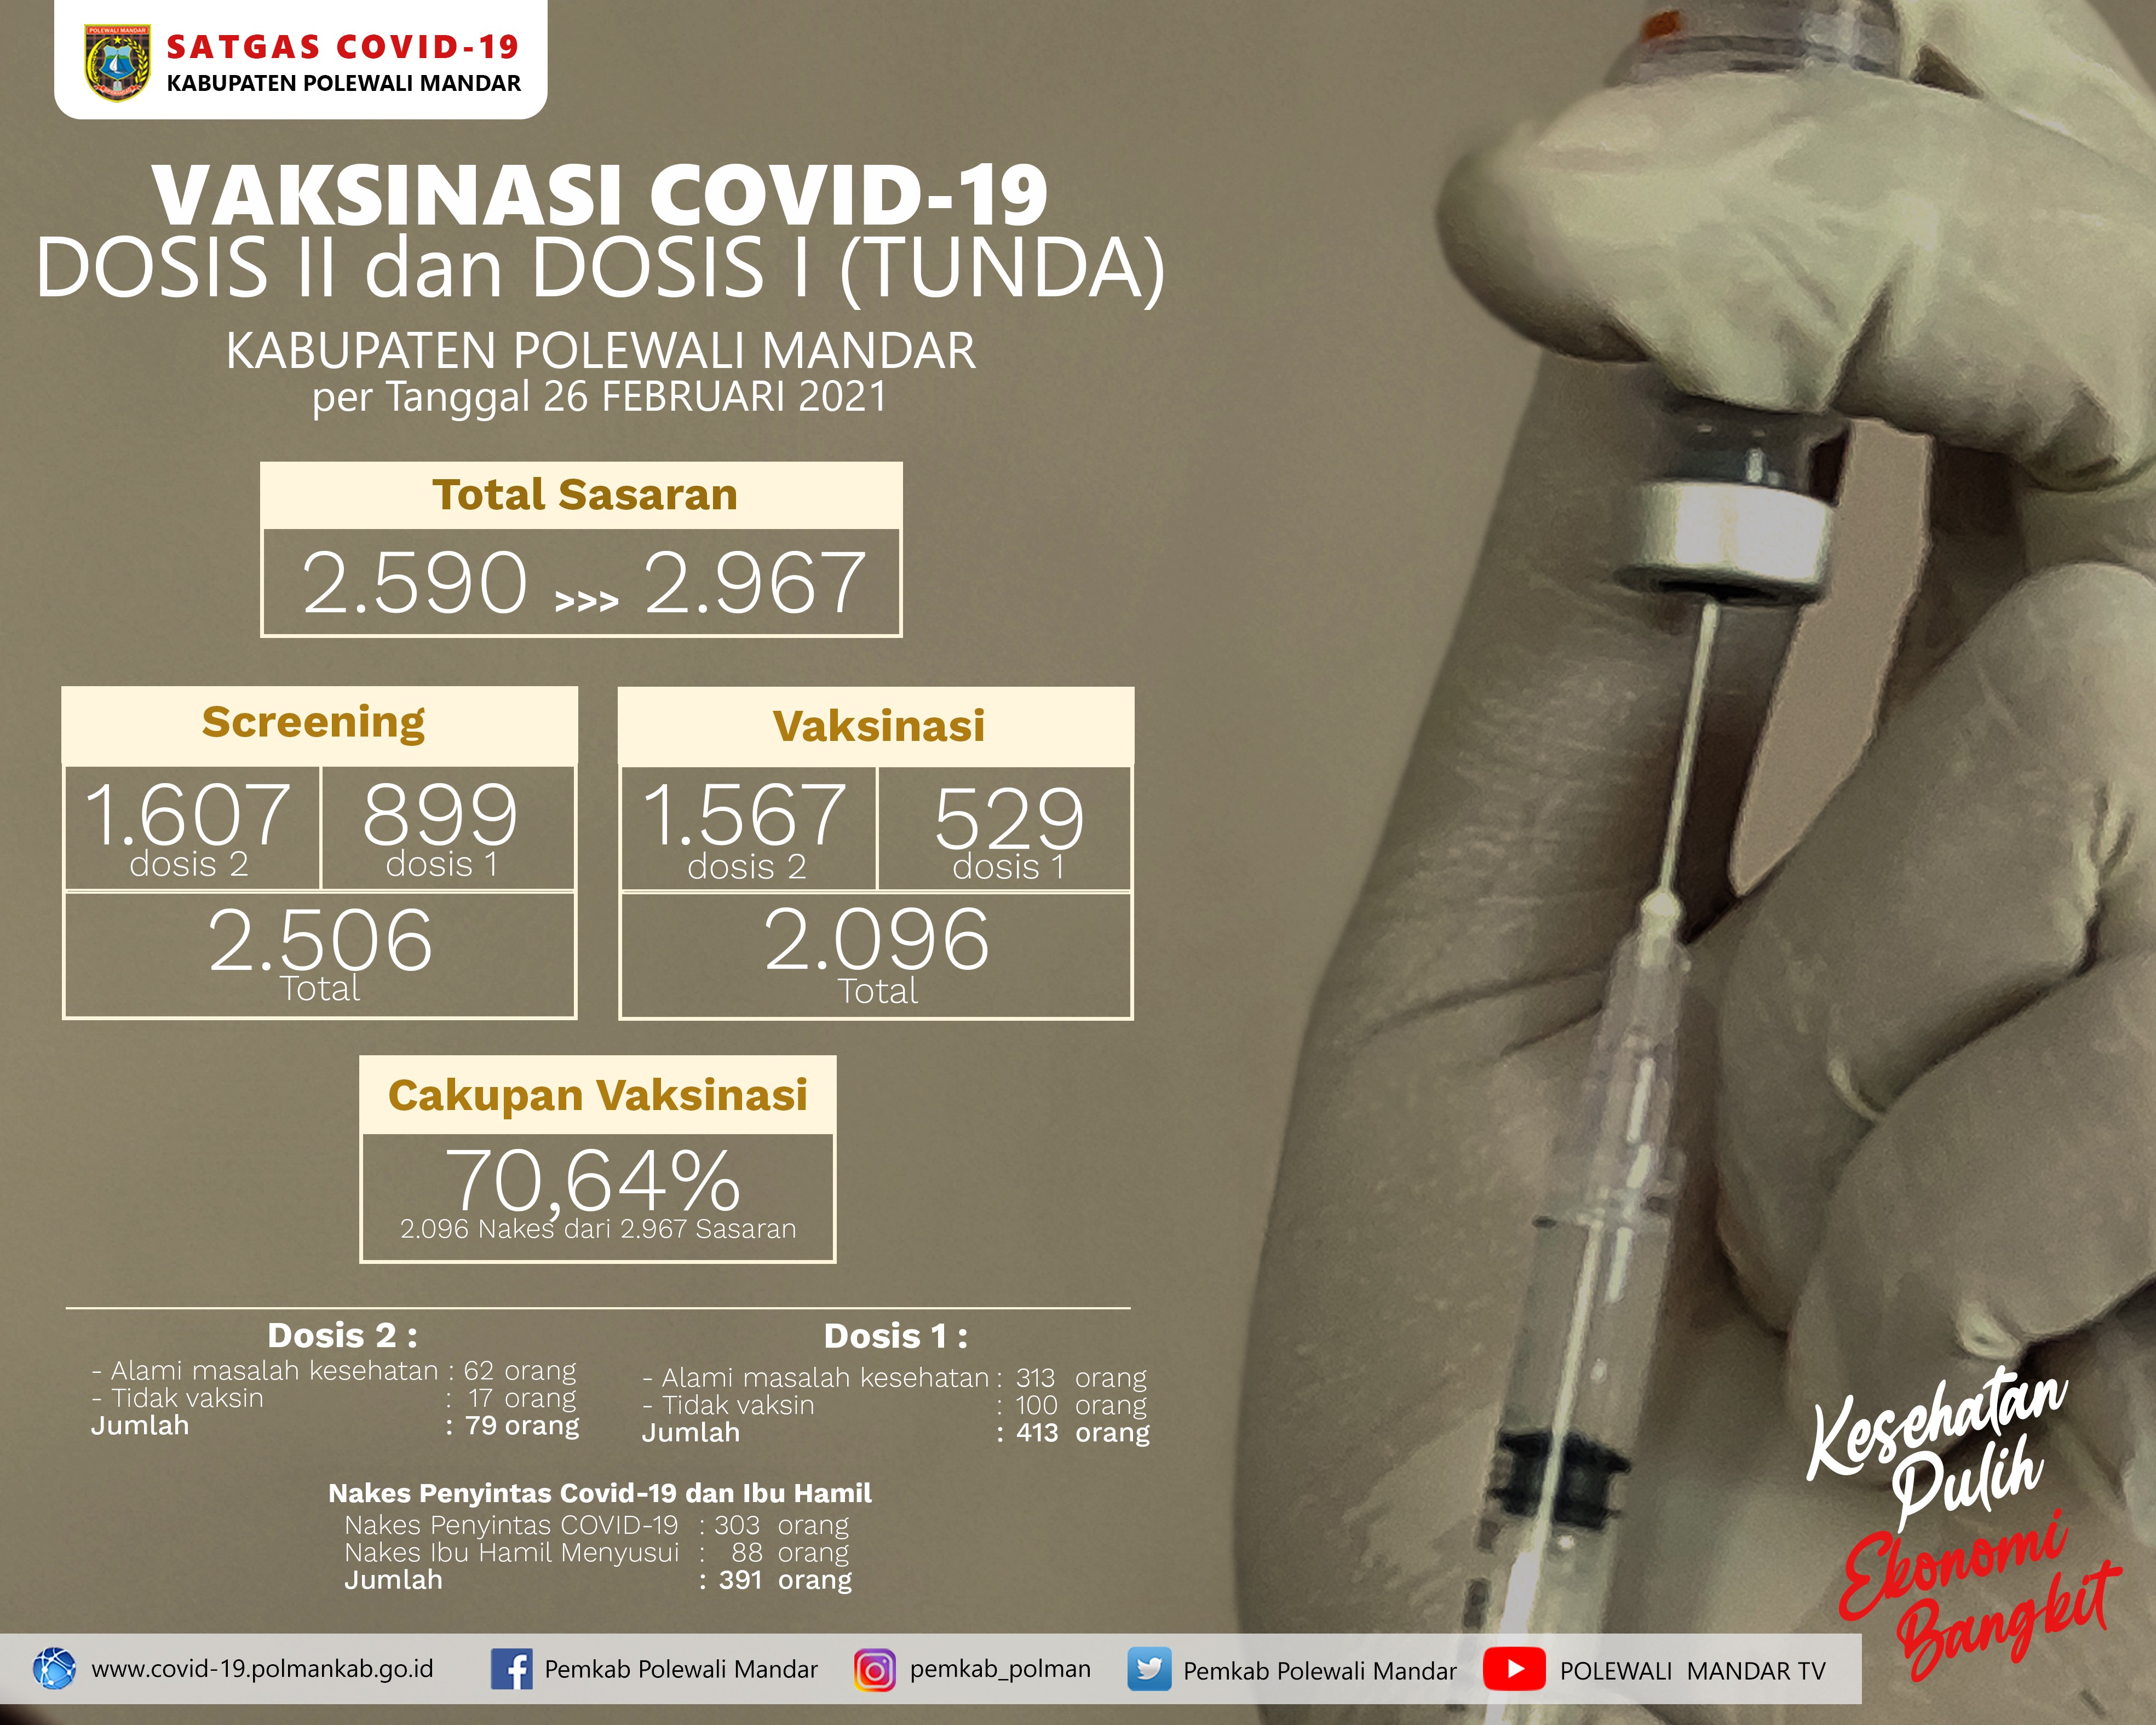 70,64%, Cakupan Vaksinasi Covid-19 Tenaga Kesehatan per 26 Februari 2021